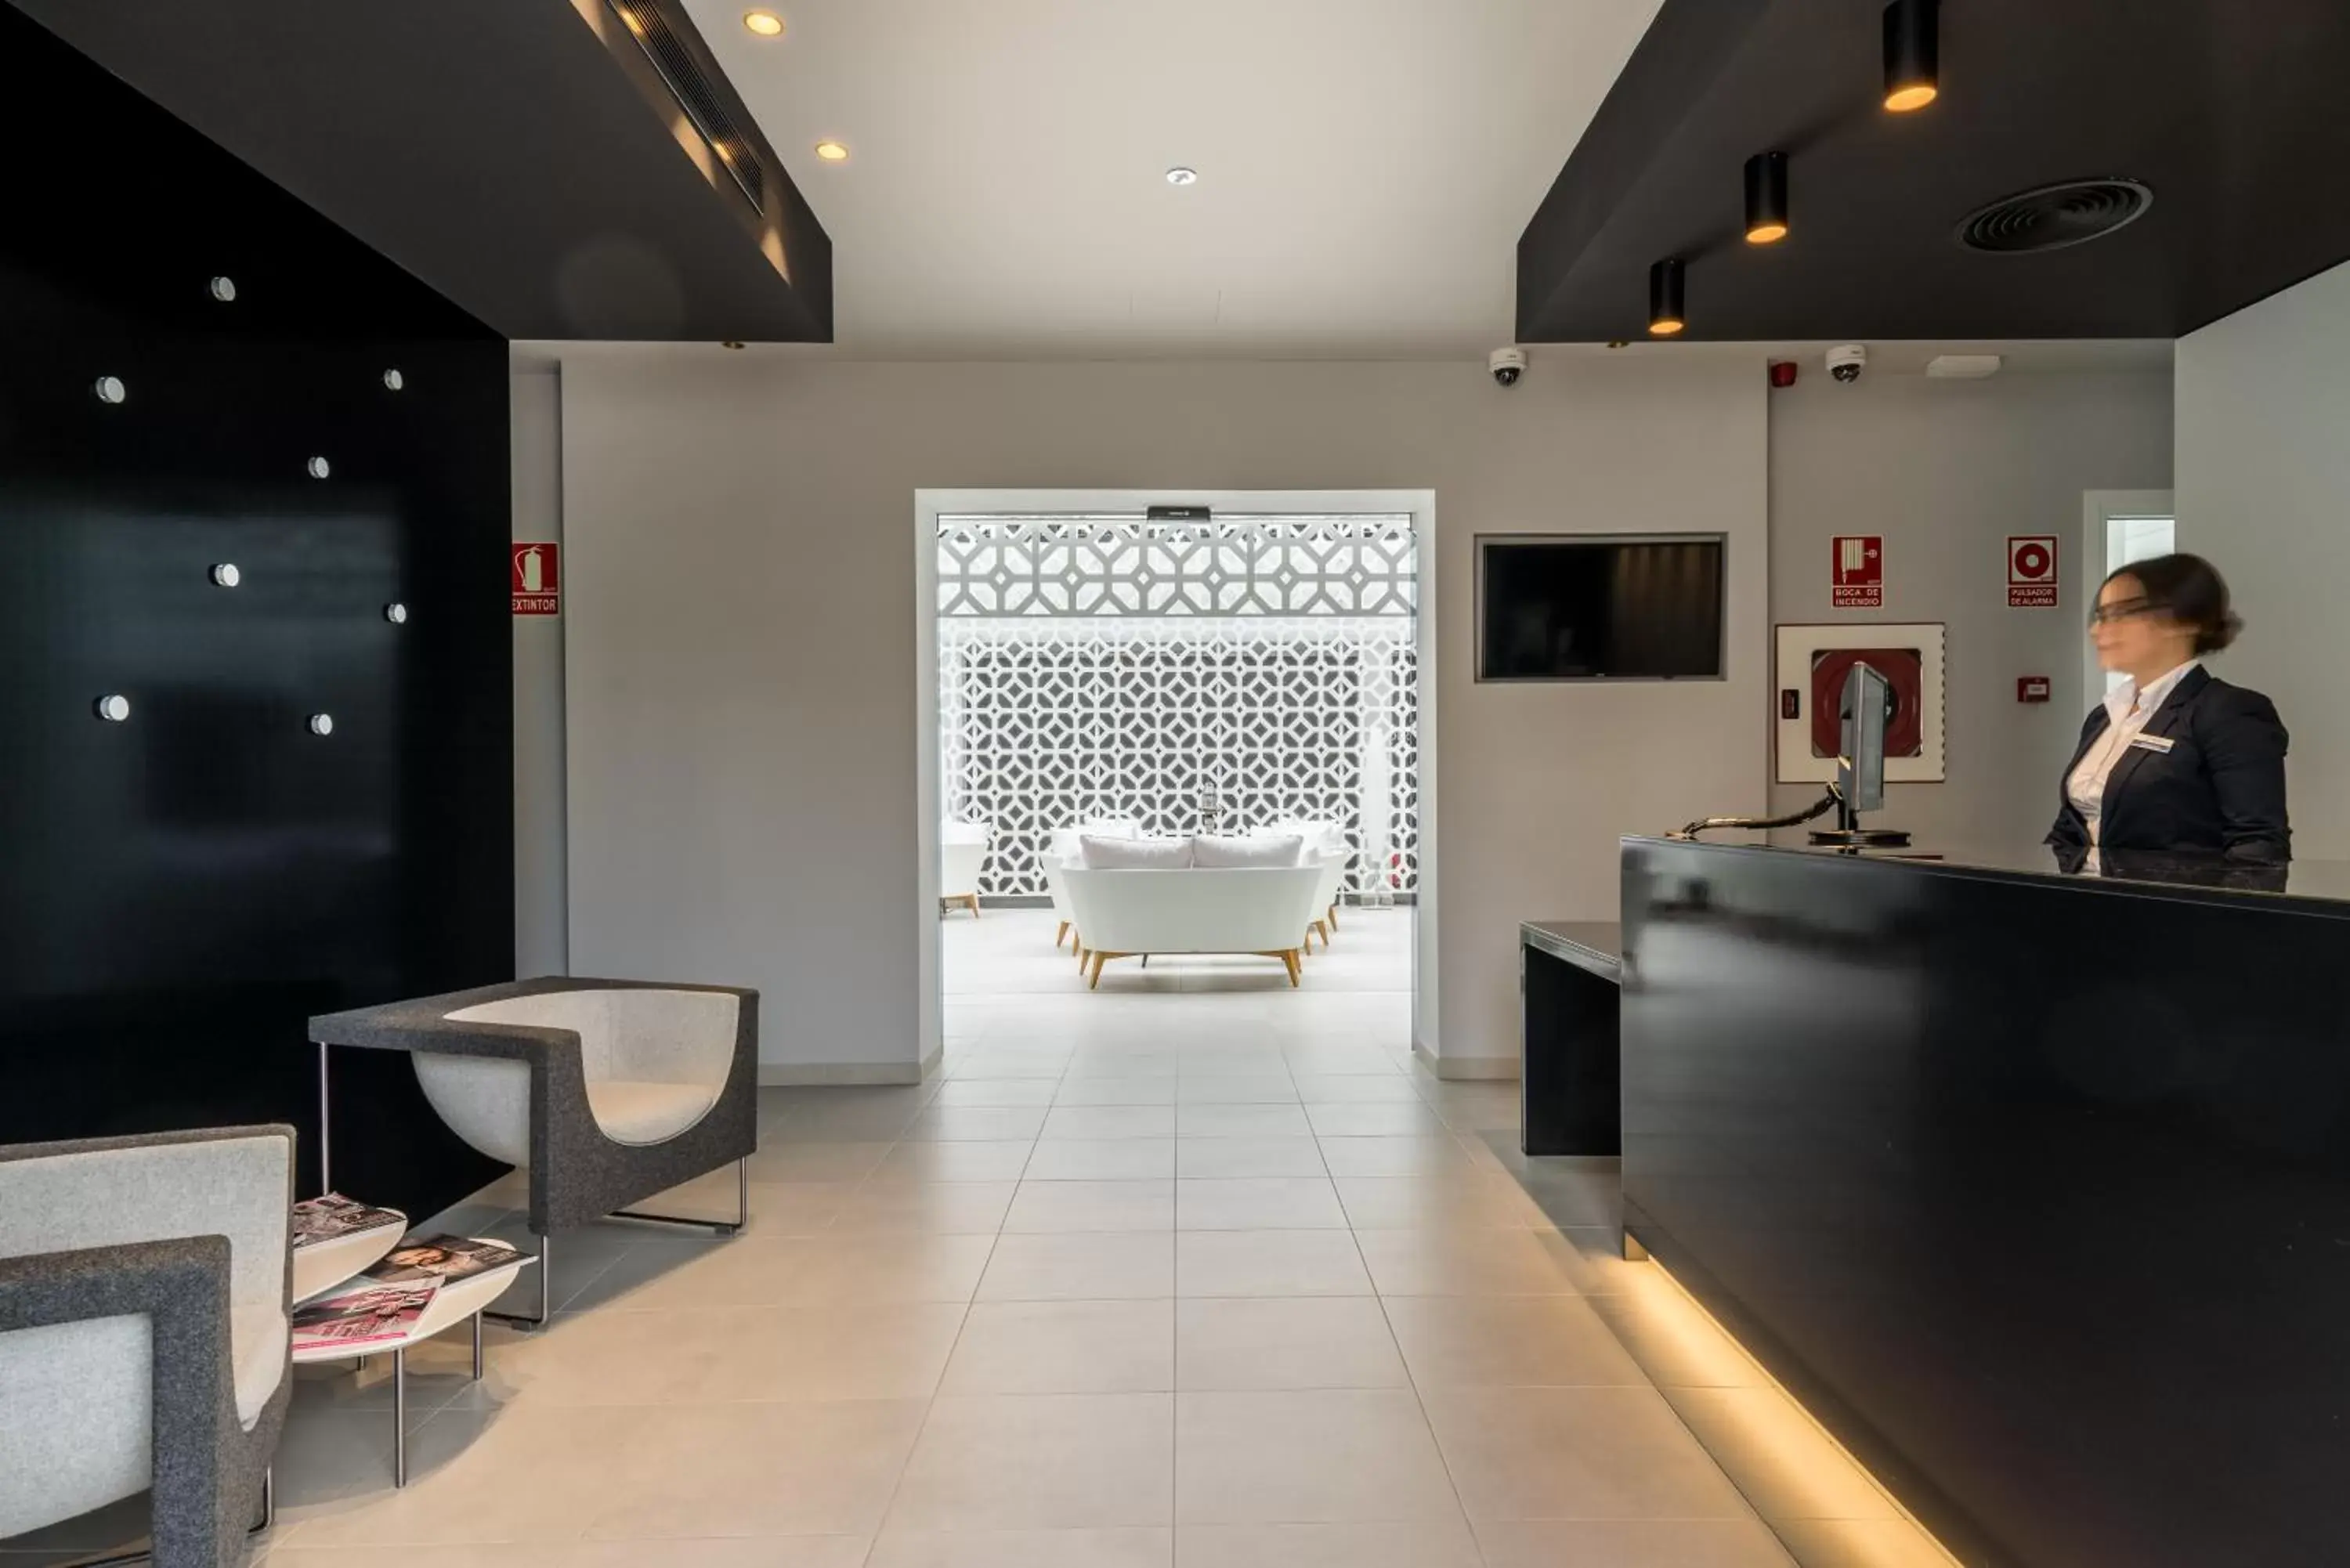 Area and facilities, Lobby/Reception in Costa del Sol Torremolinos Hotel